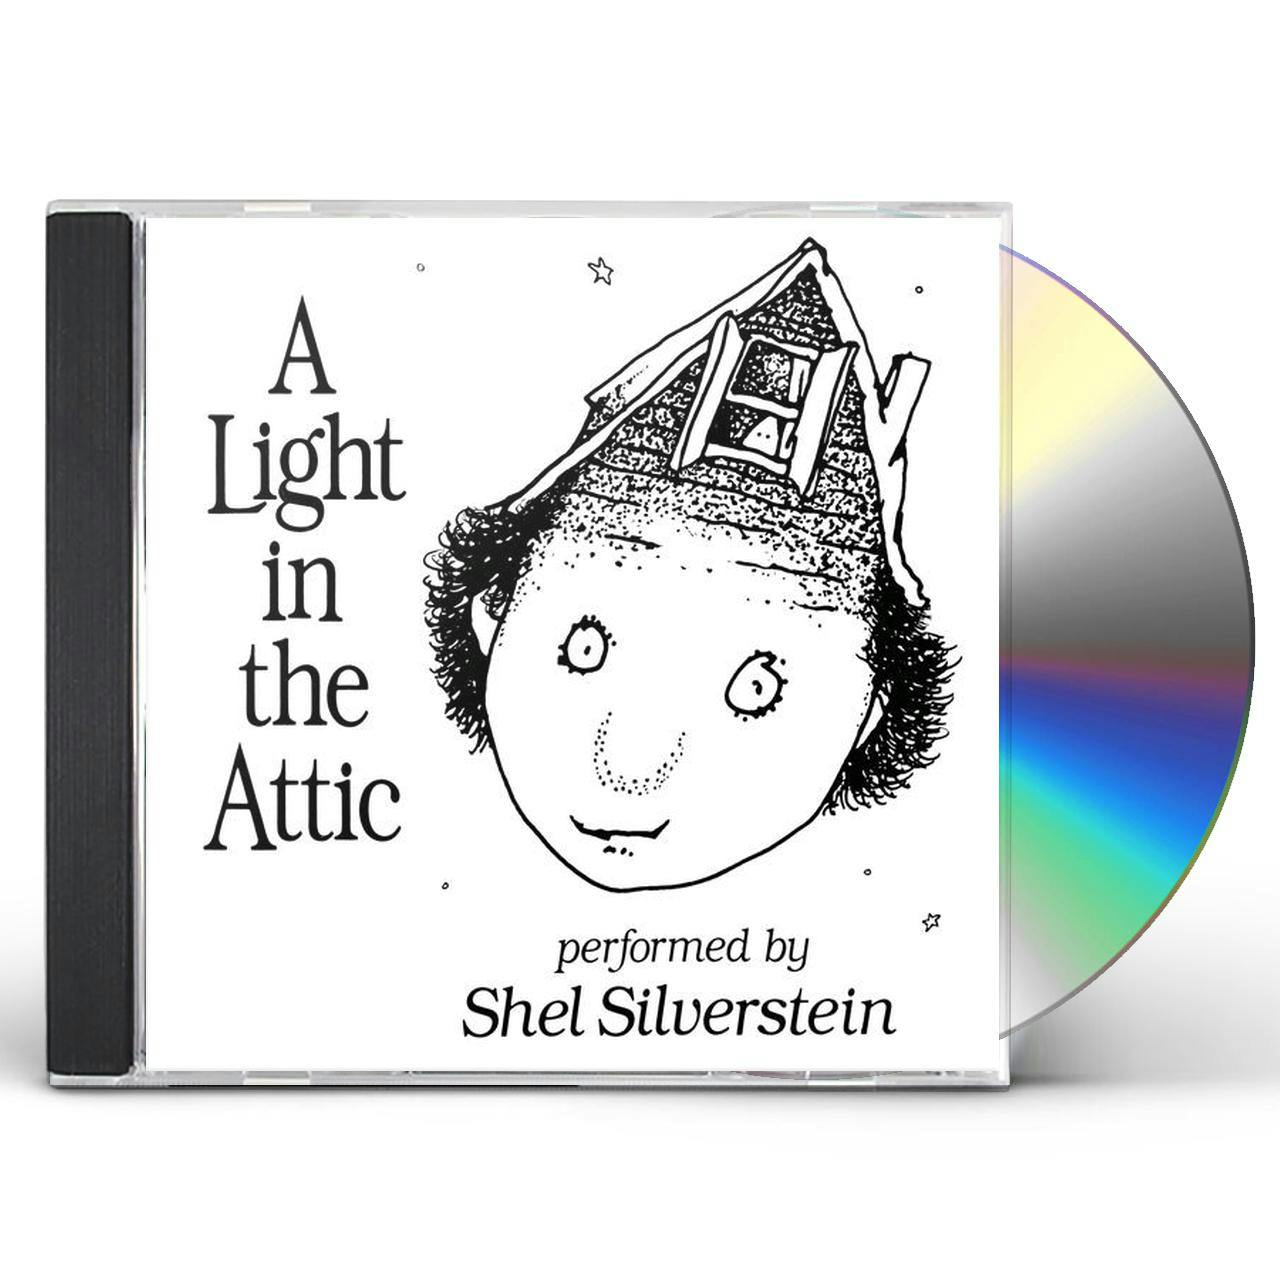 The　Light　Shel　Attic　CD　Silverstein　in